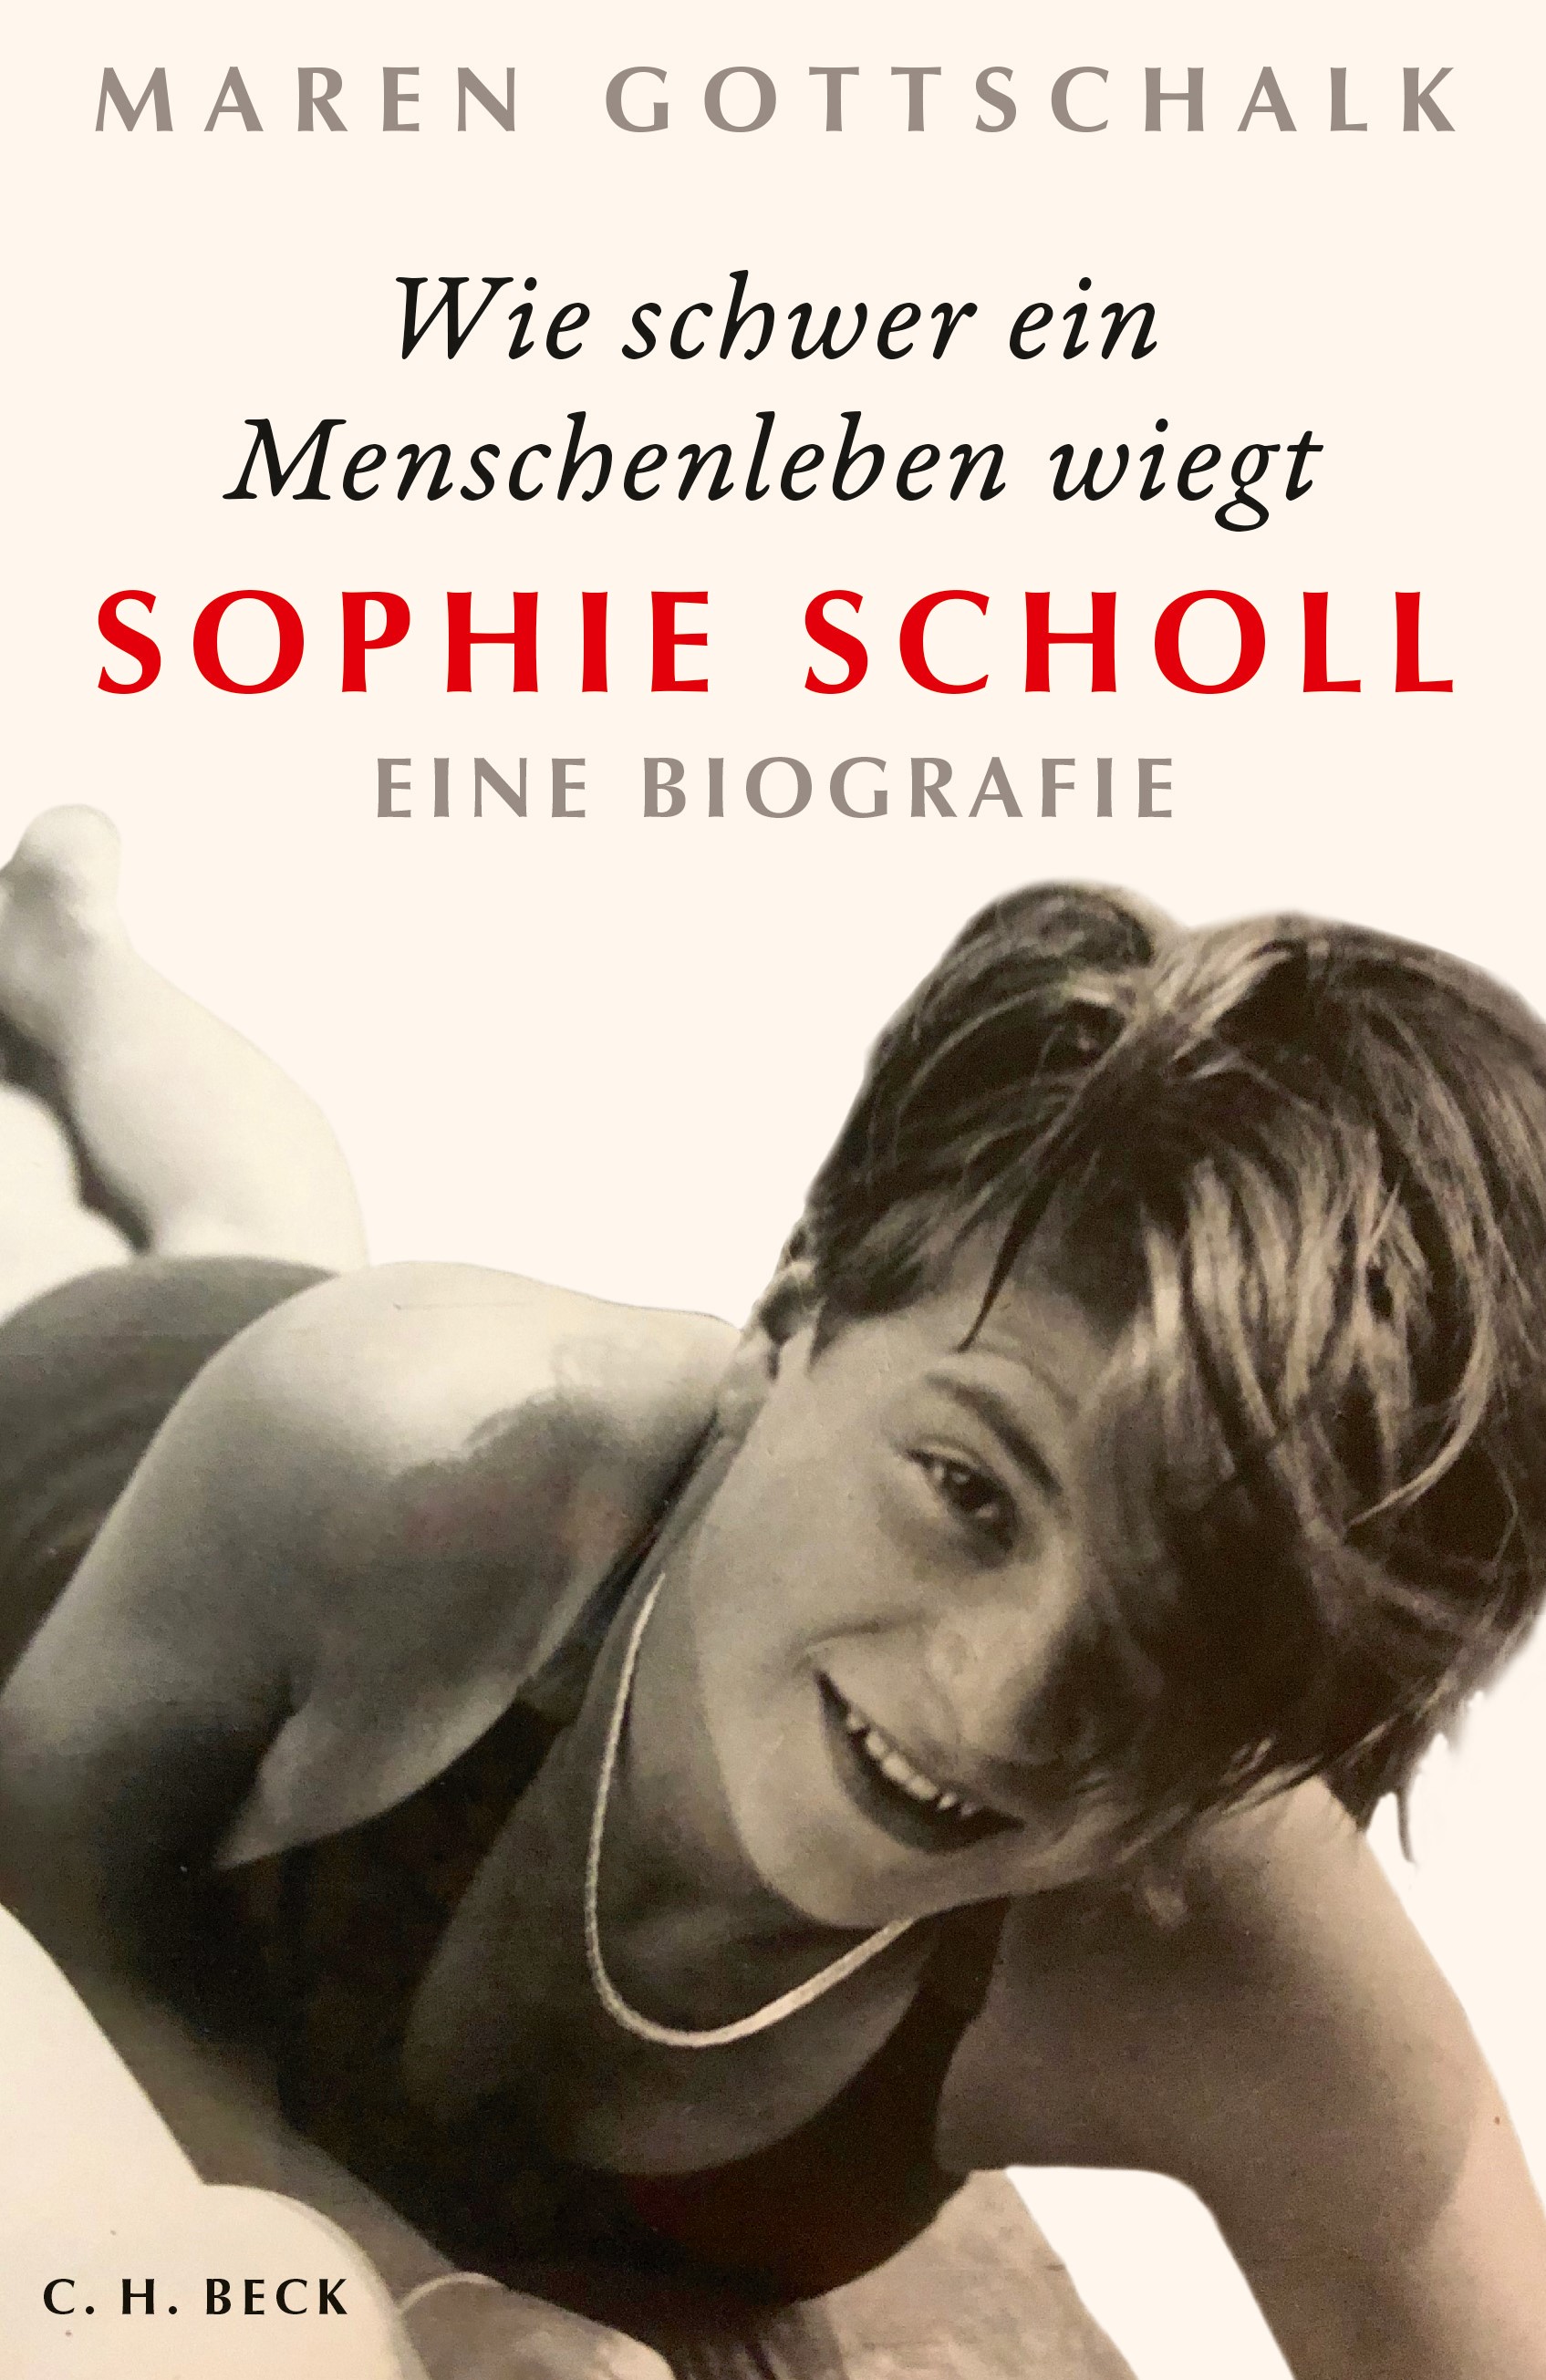 Cover: Gottschalk, Maren, Wie schwer ein Menschenleben wiegt